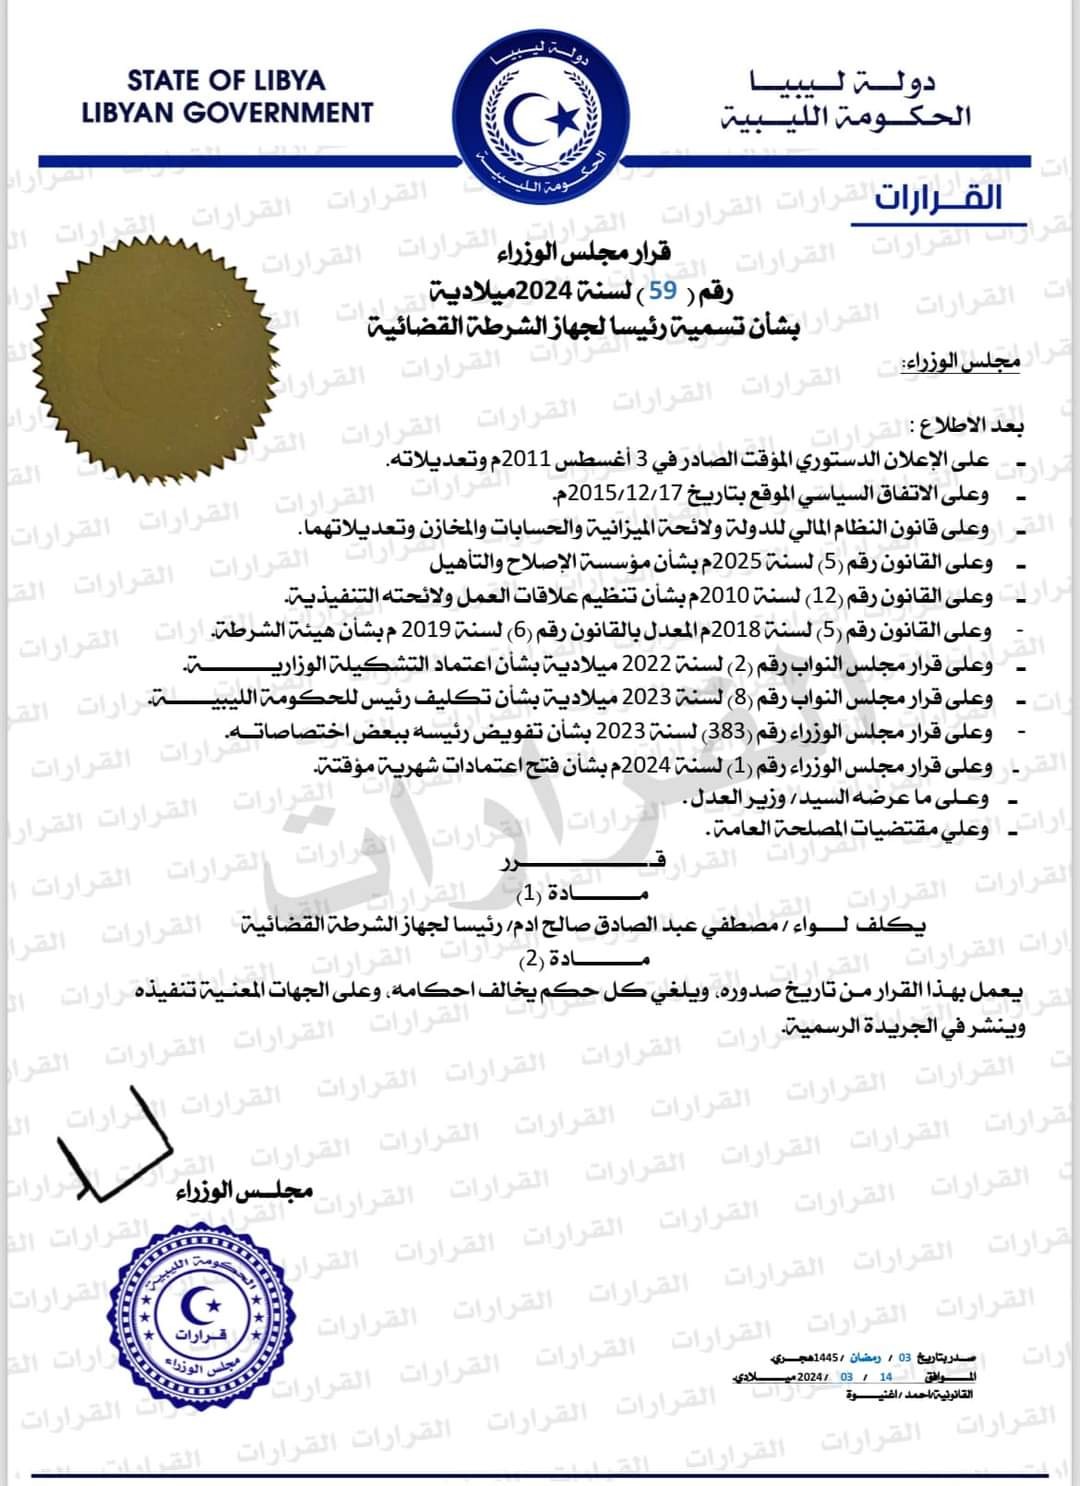 مجلس الوزراء بالحكومة الليبية يصدر قرارا بشأن تسمية رئيس لجهاز الشرطة القضائية